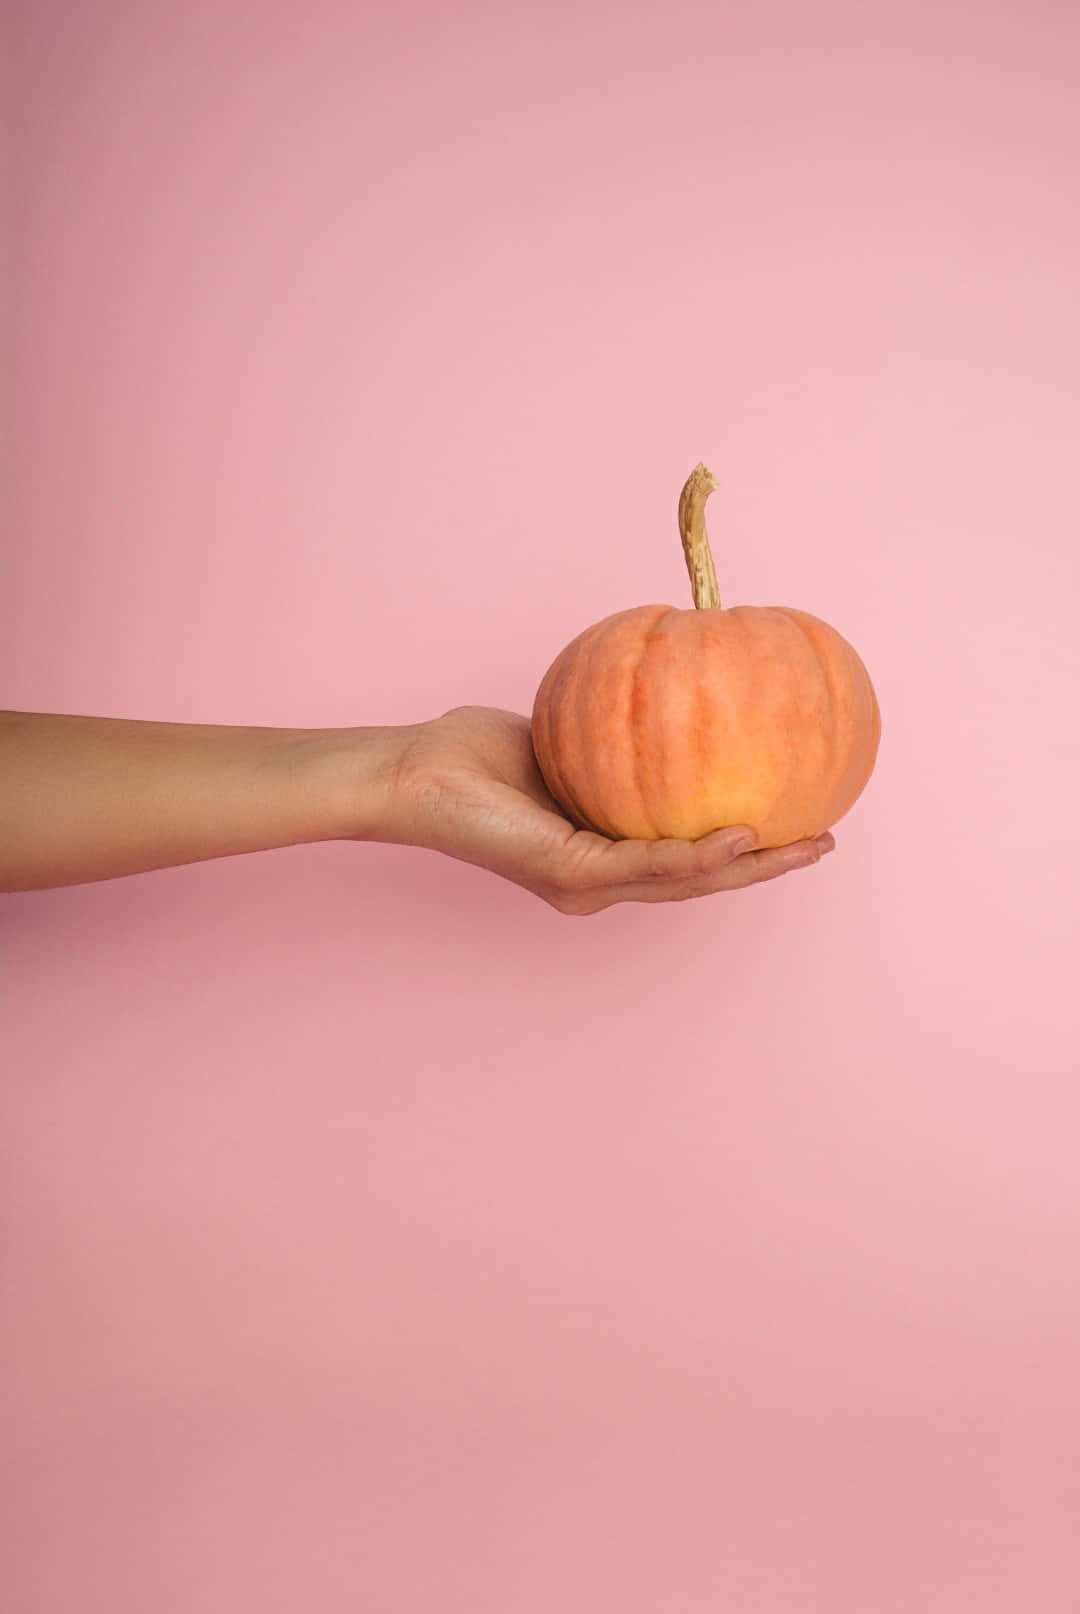 Pumpkinin Hand Against Pink Background Wallpaper